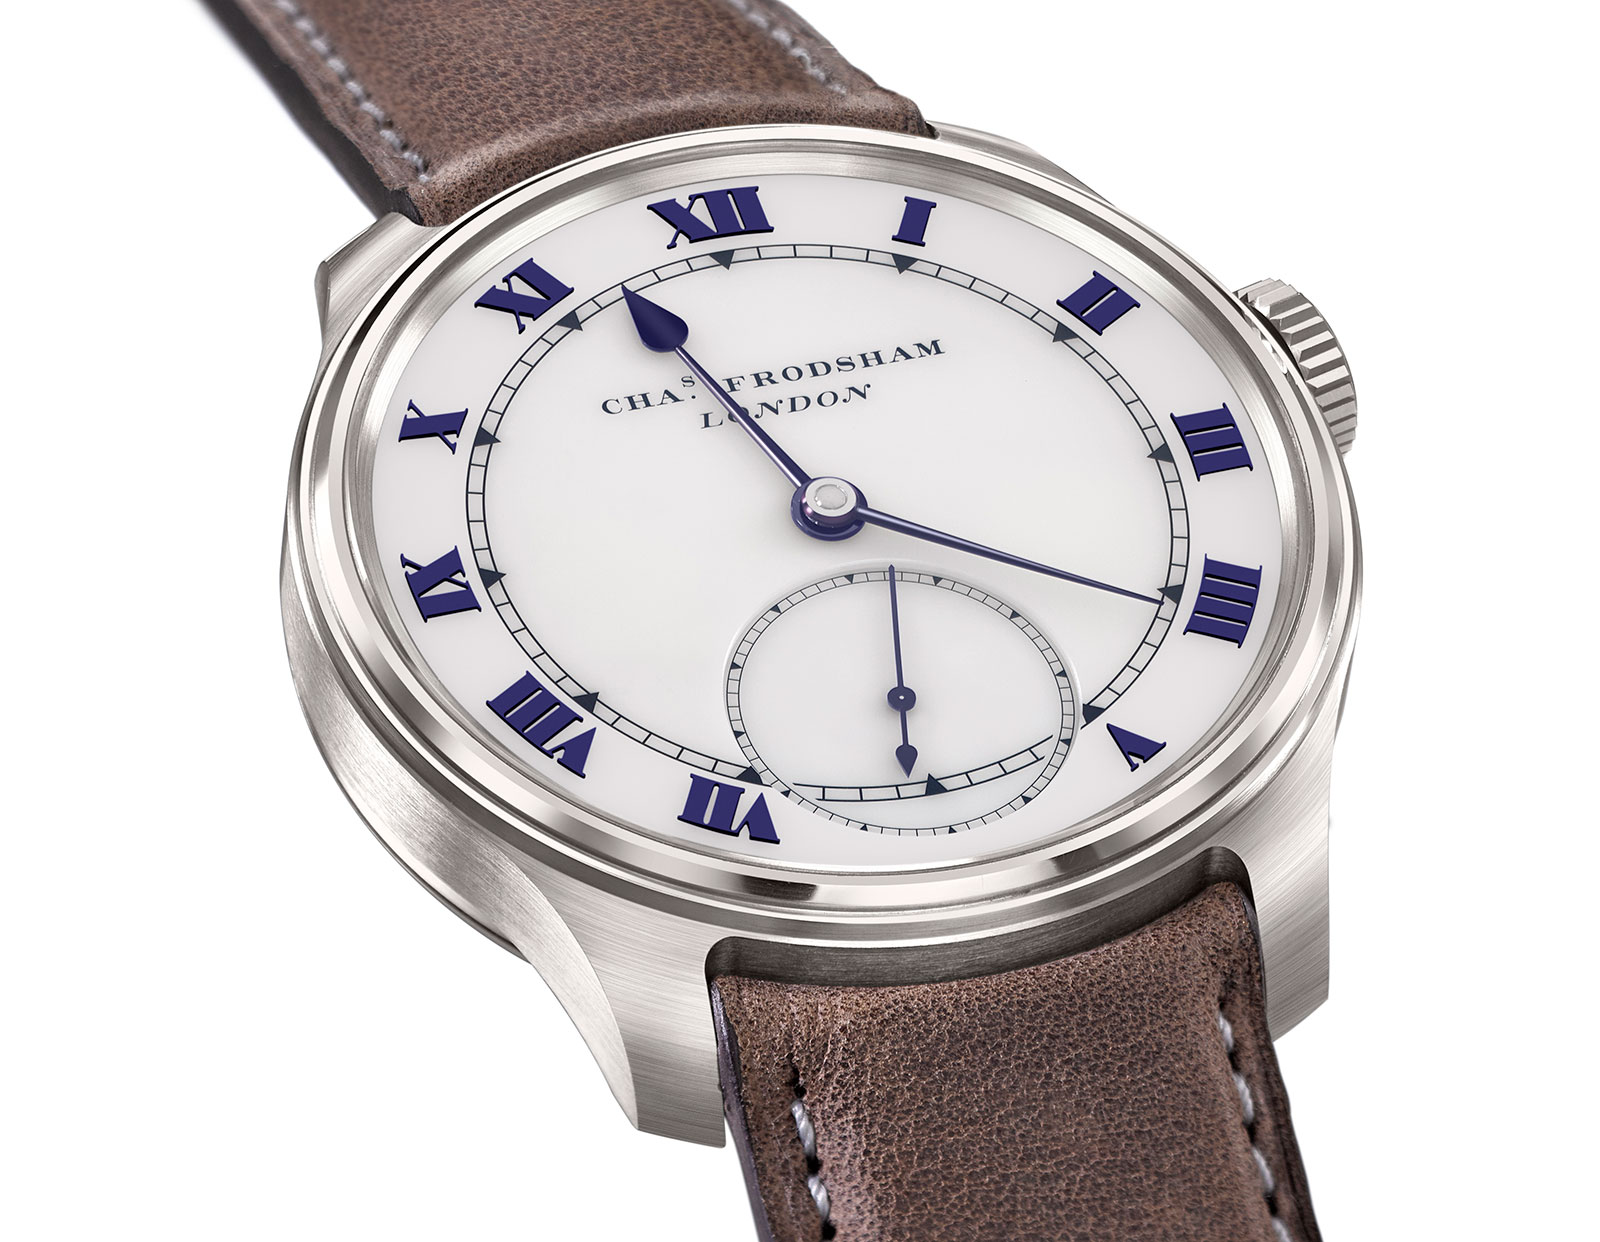 New Charles Frodsham wristwatch